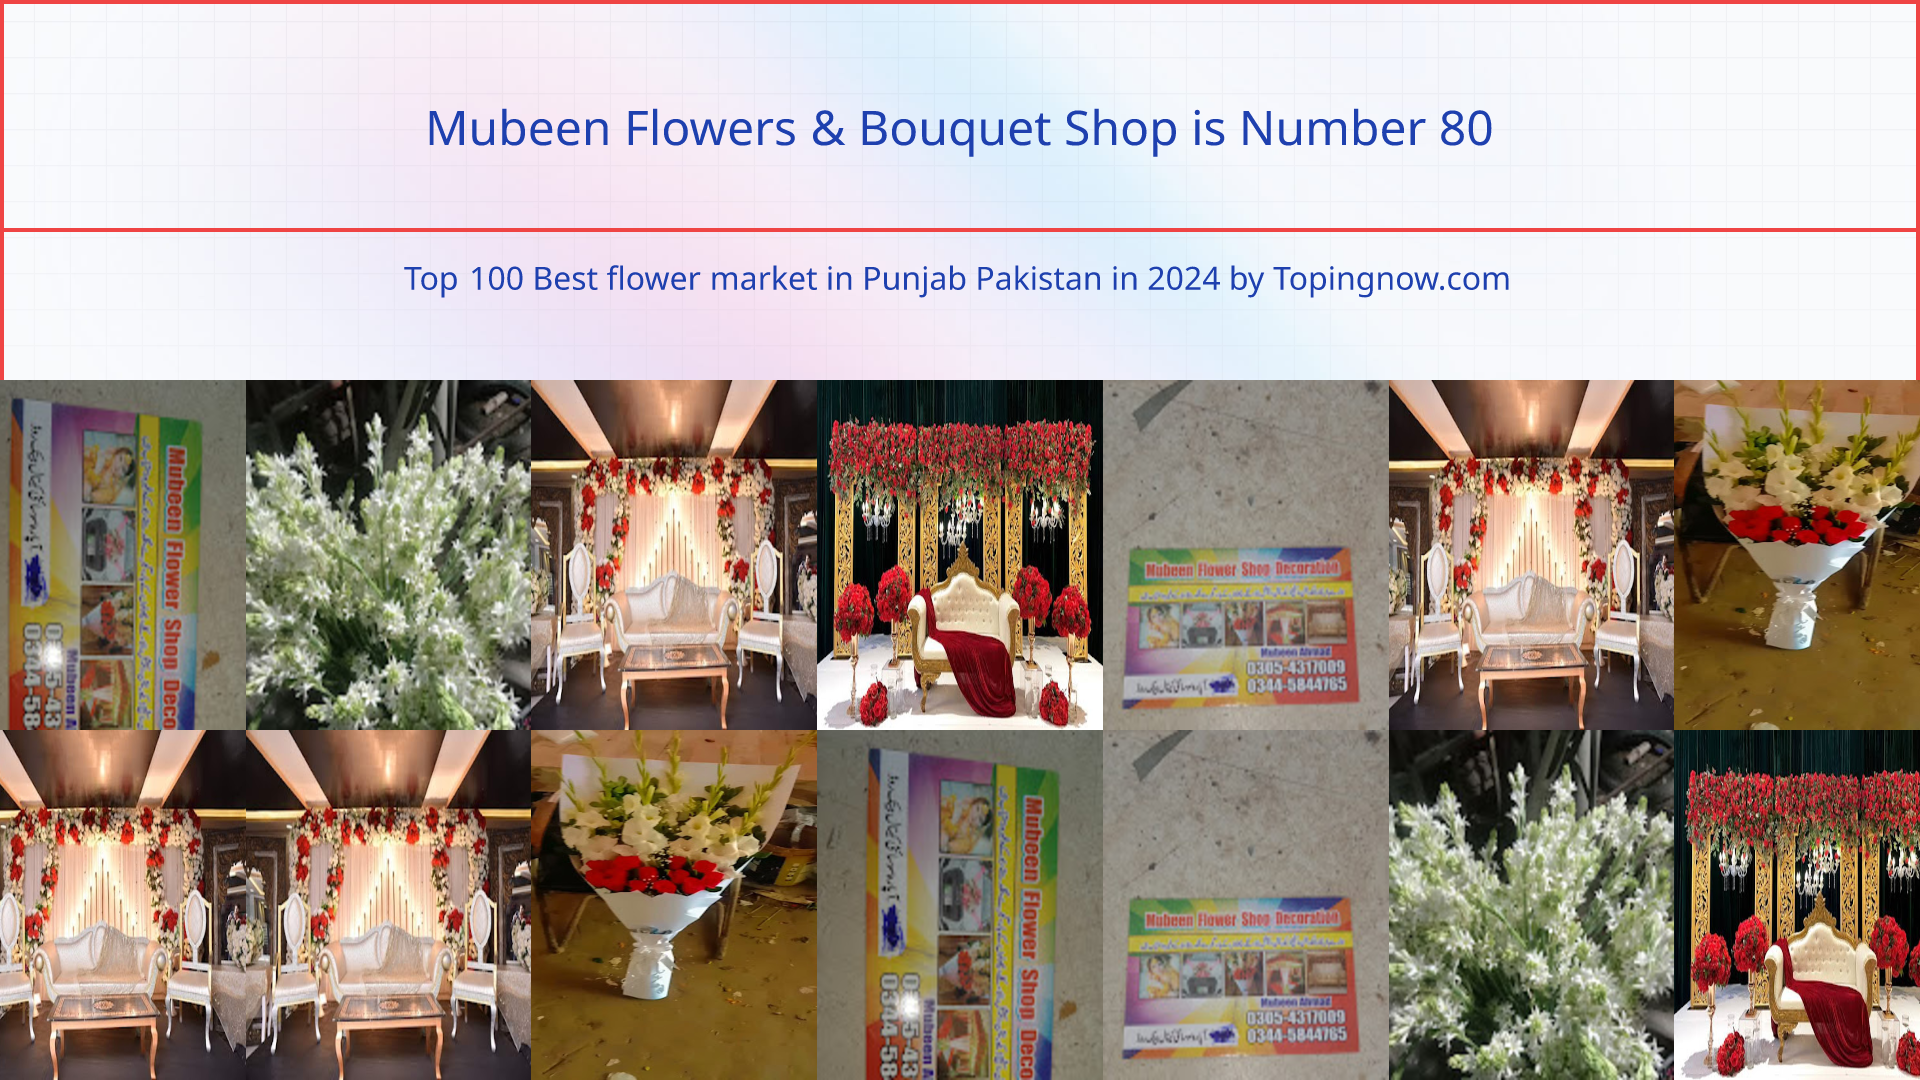 Mubeen Flowers & Bouquet Shop: Top 100 Best flower market in Punjab Pakistan in 2024